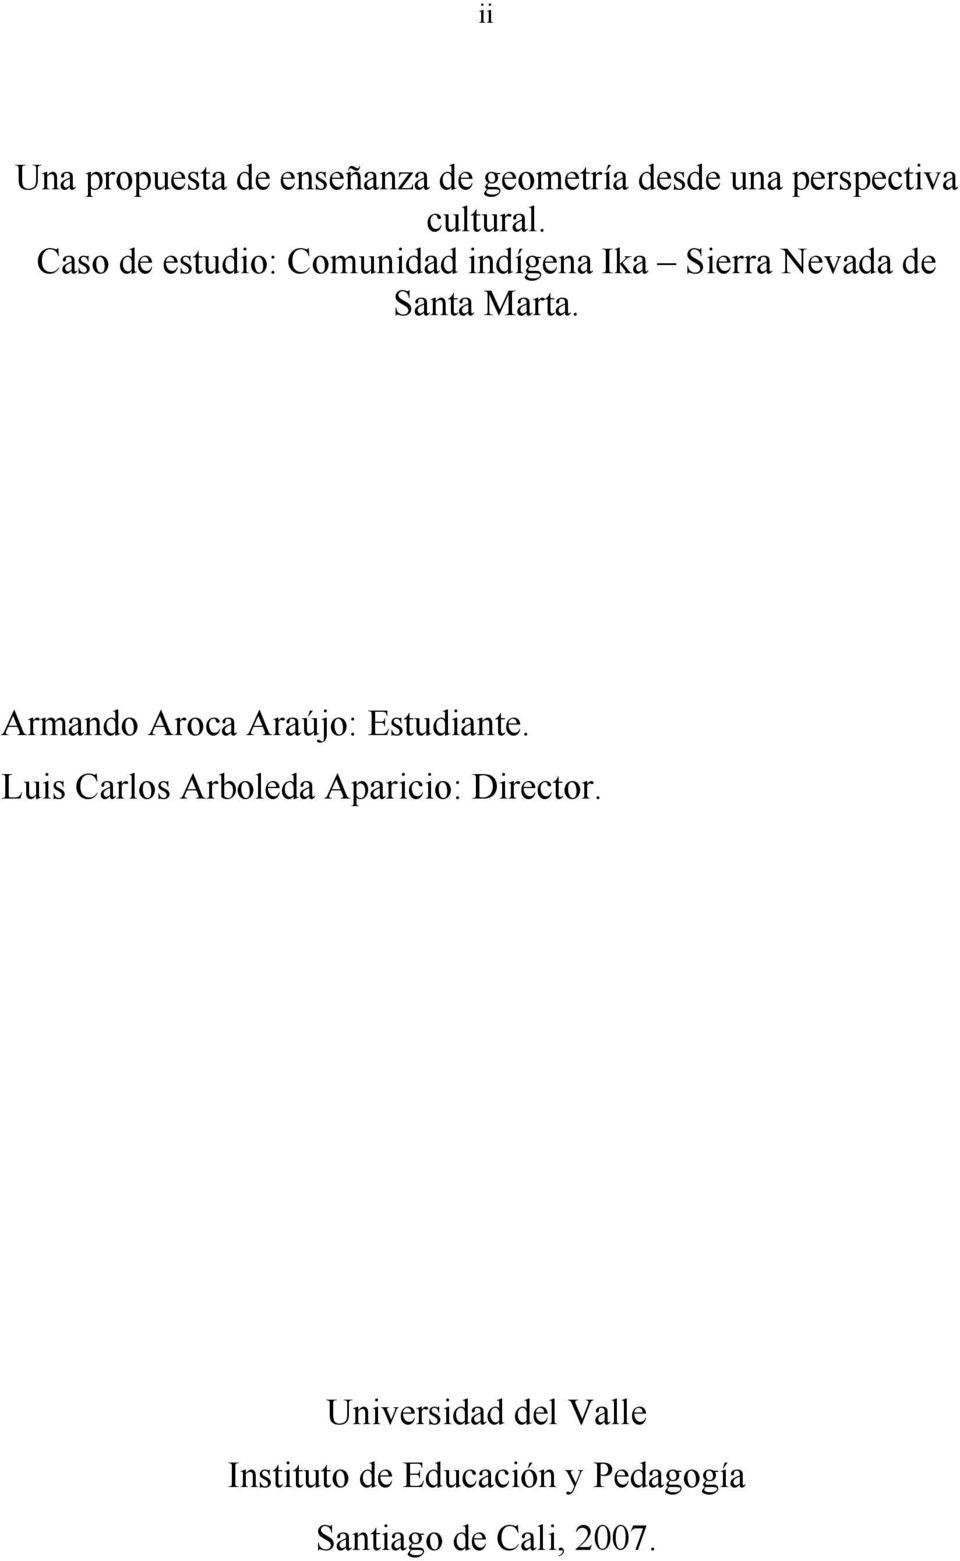 Armando Aroca Araújo: Estudiante. Luis Carlos Arboleda Aparicio: Director.